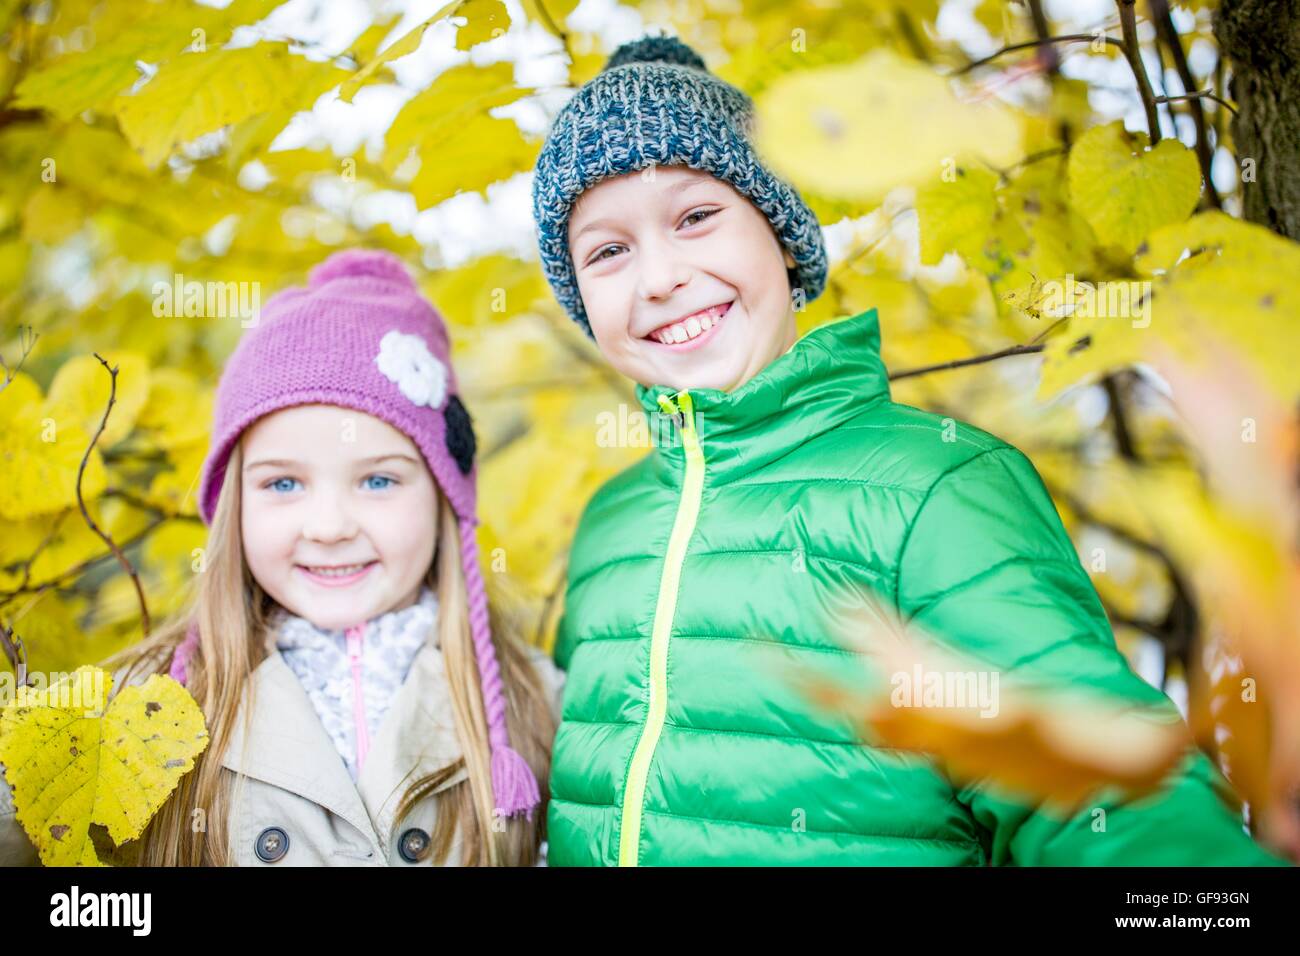 -MODELL VERÖFFENTLICHT. Kinder stehen neben Herbstpflanzen und lächelnd, Porträt. Stockfoto